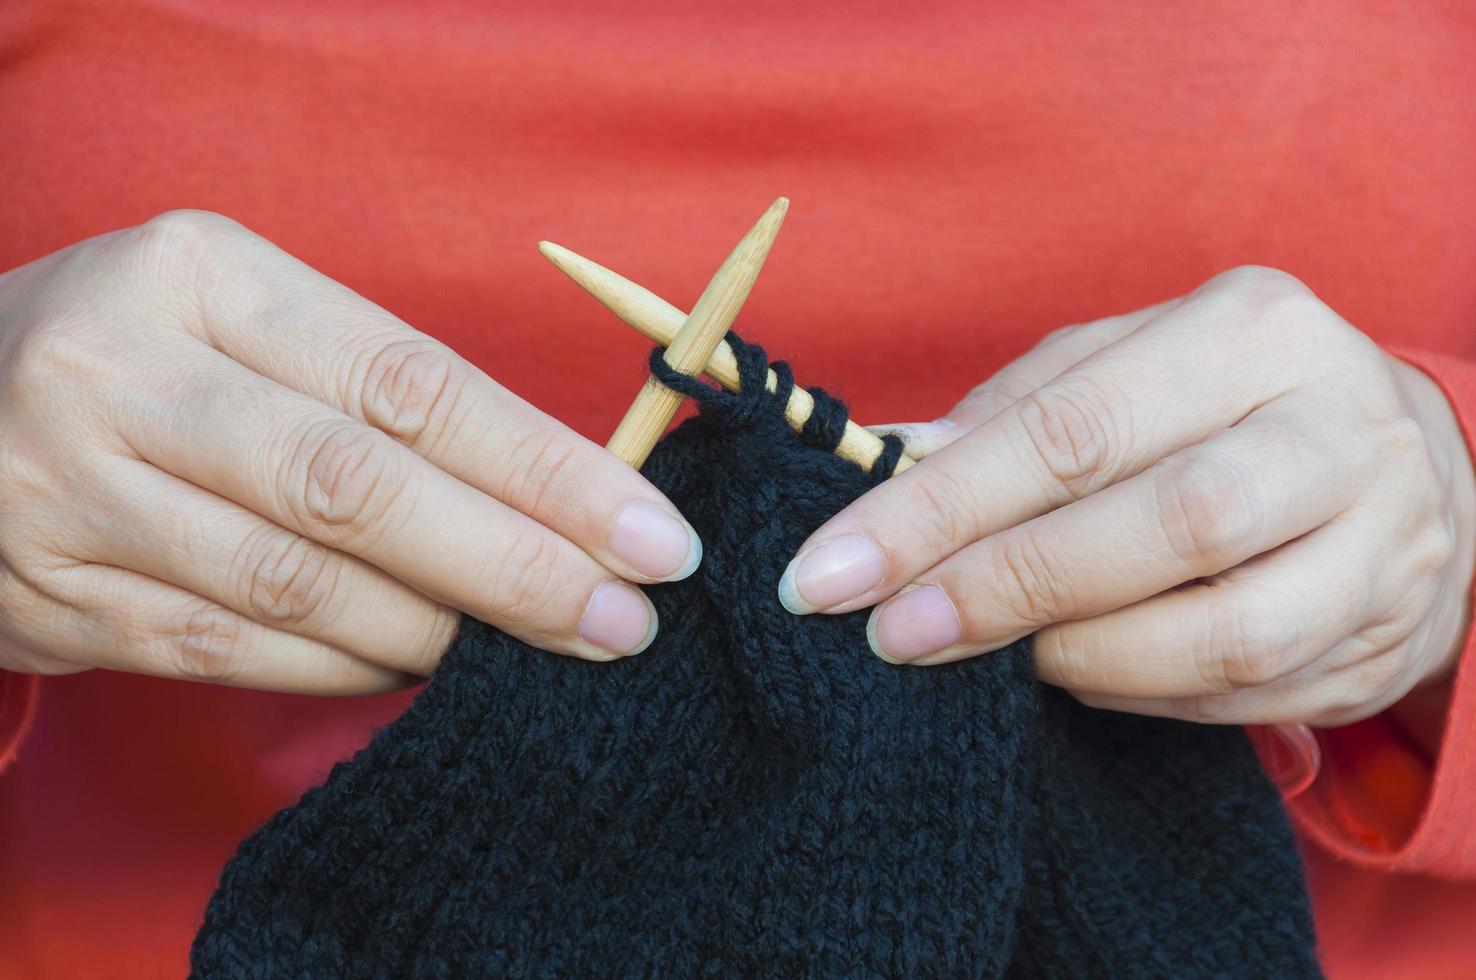 as mãos da mulher estão fazendo tricô de chapéu preto foto